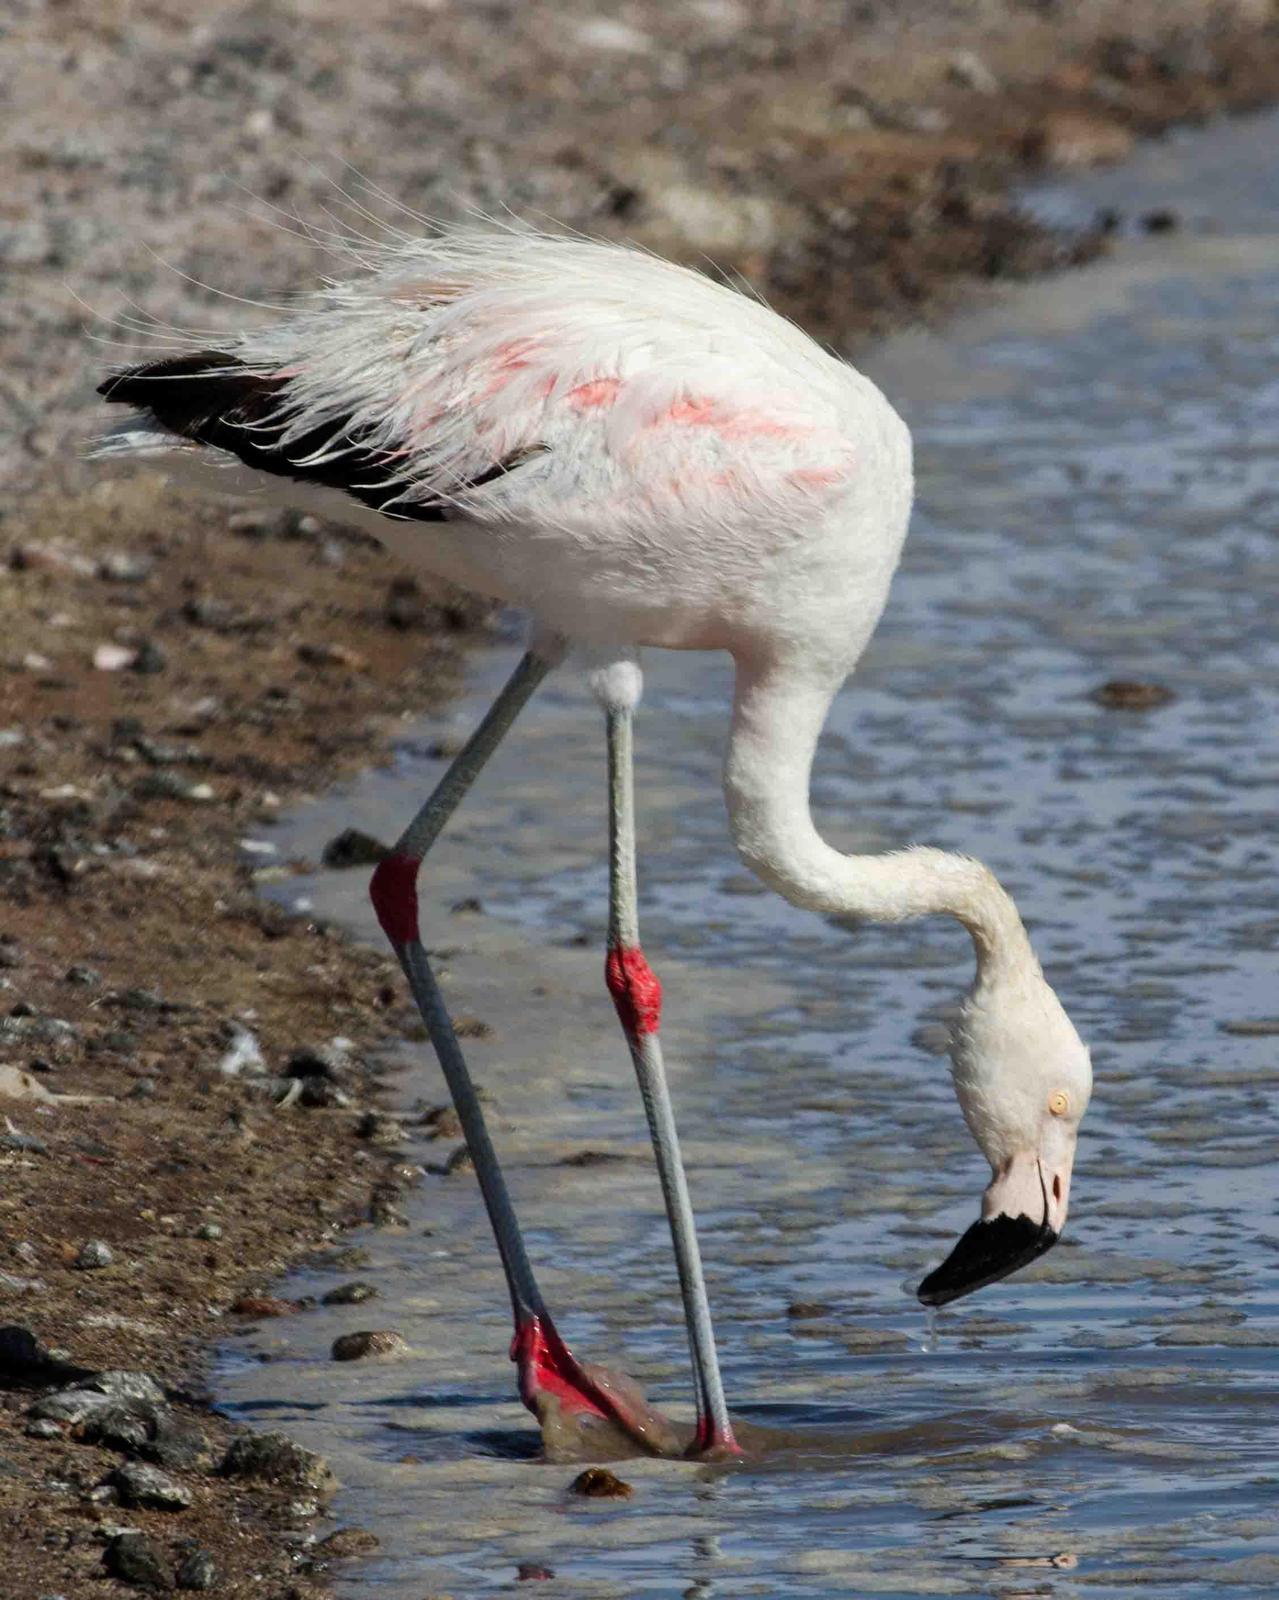 chilean flamingo images